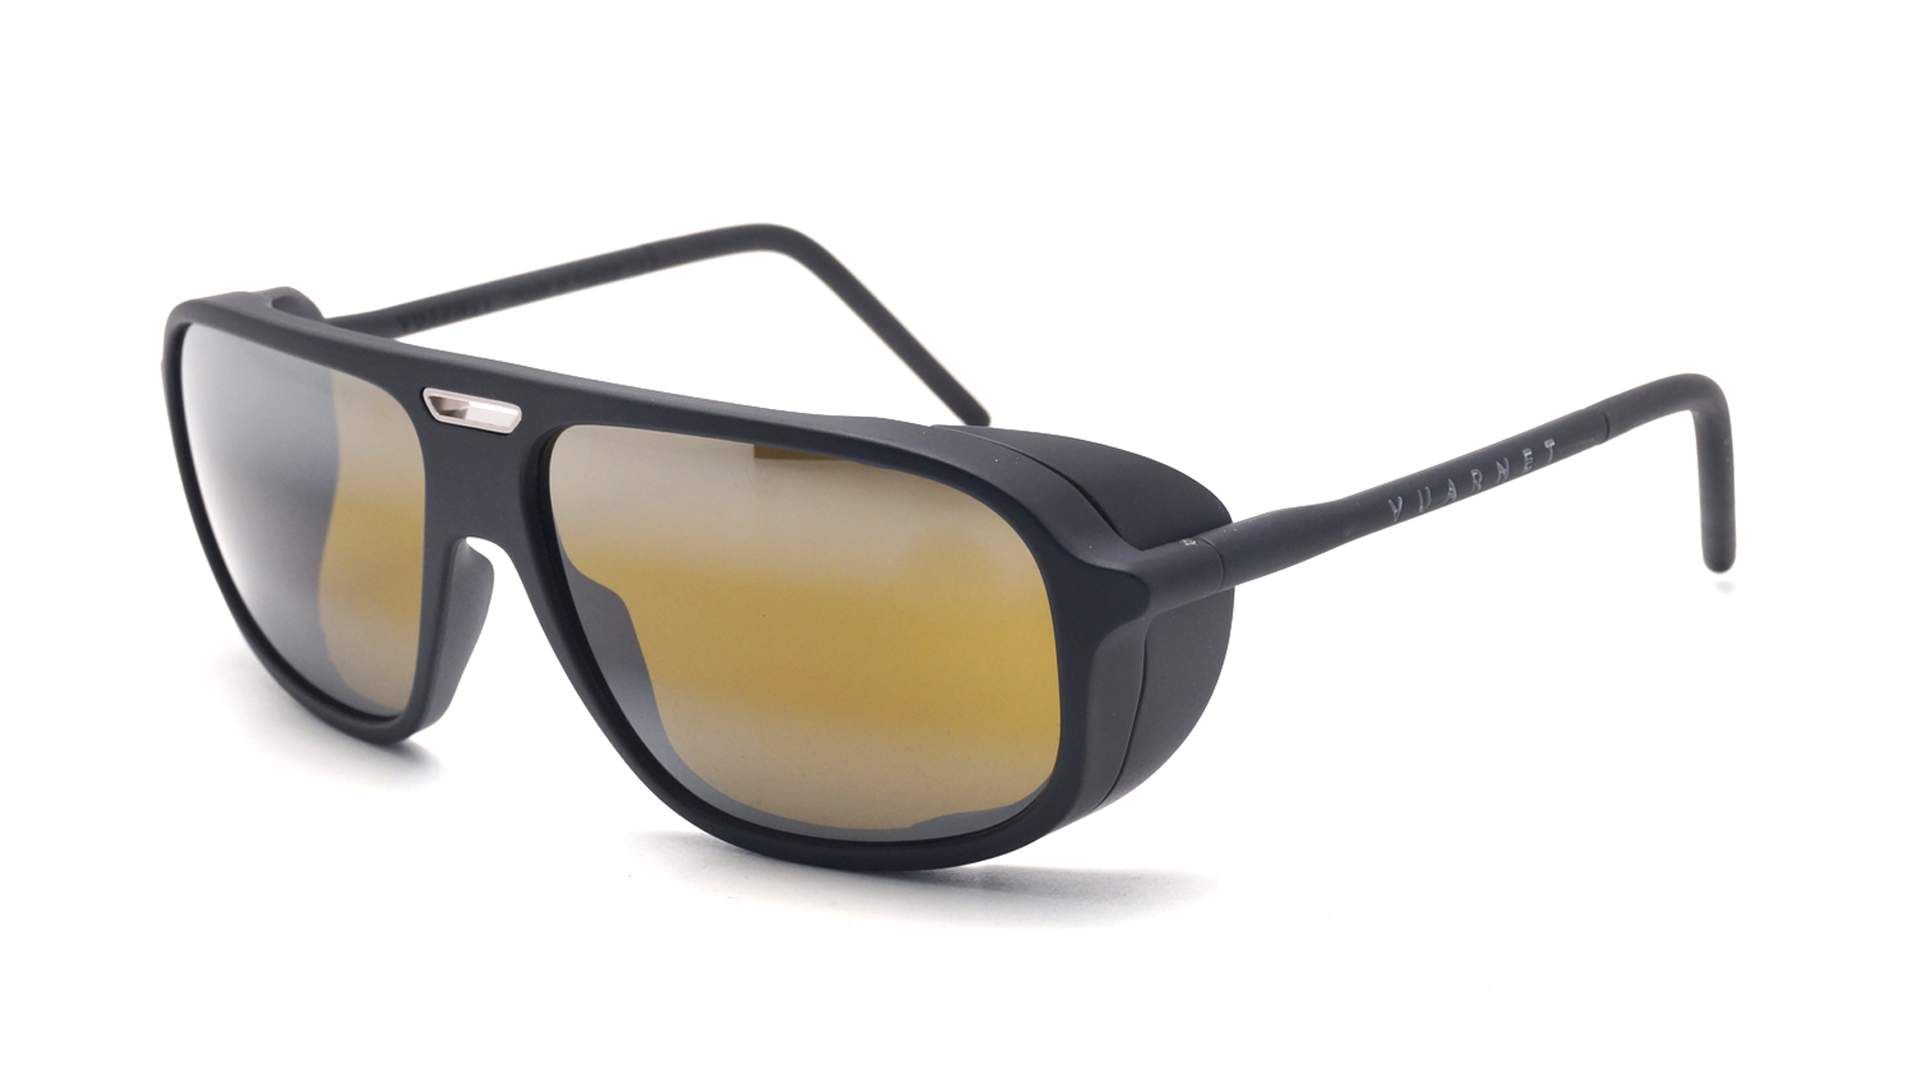 Sunglasses Vuarnet Ice VL1811 0001 7184 60-15 Black in stock | Price ...